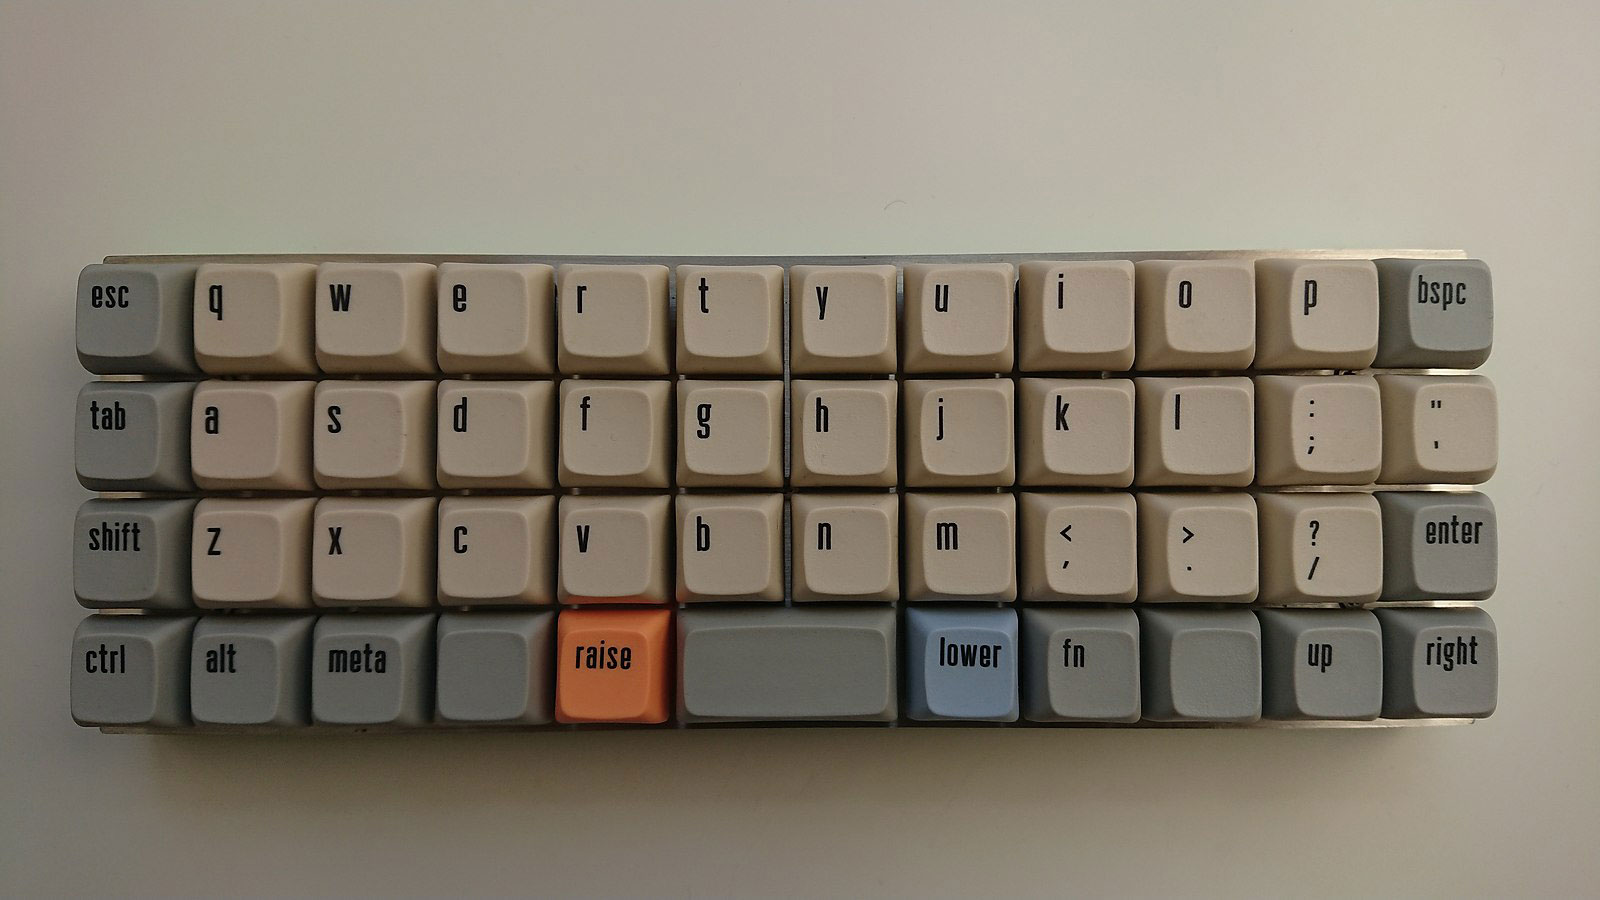 An ortholinear keyboard